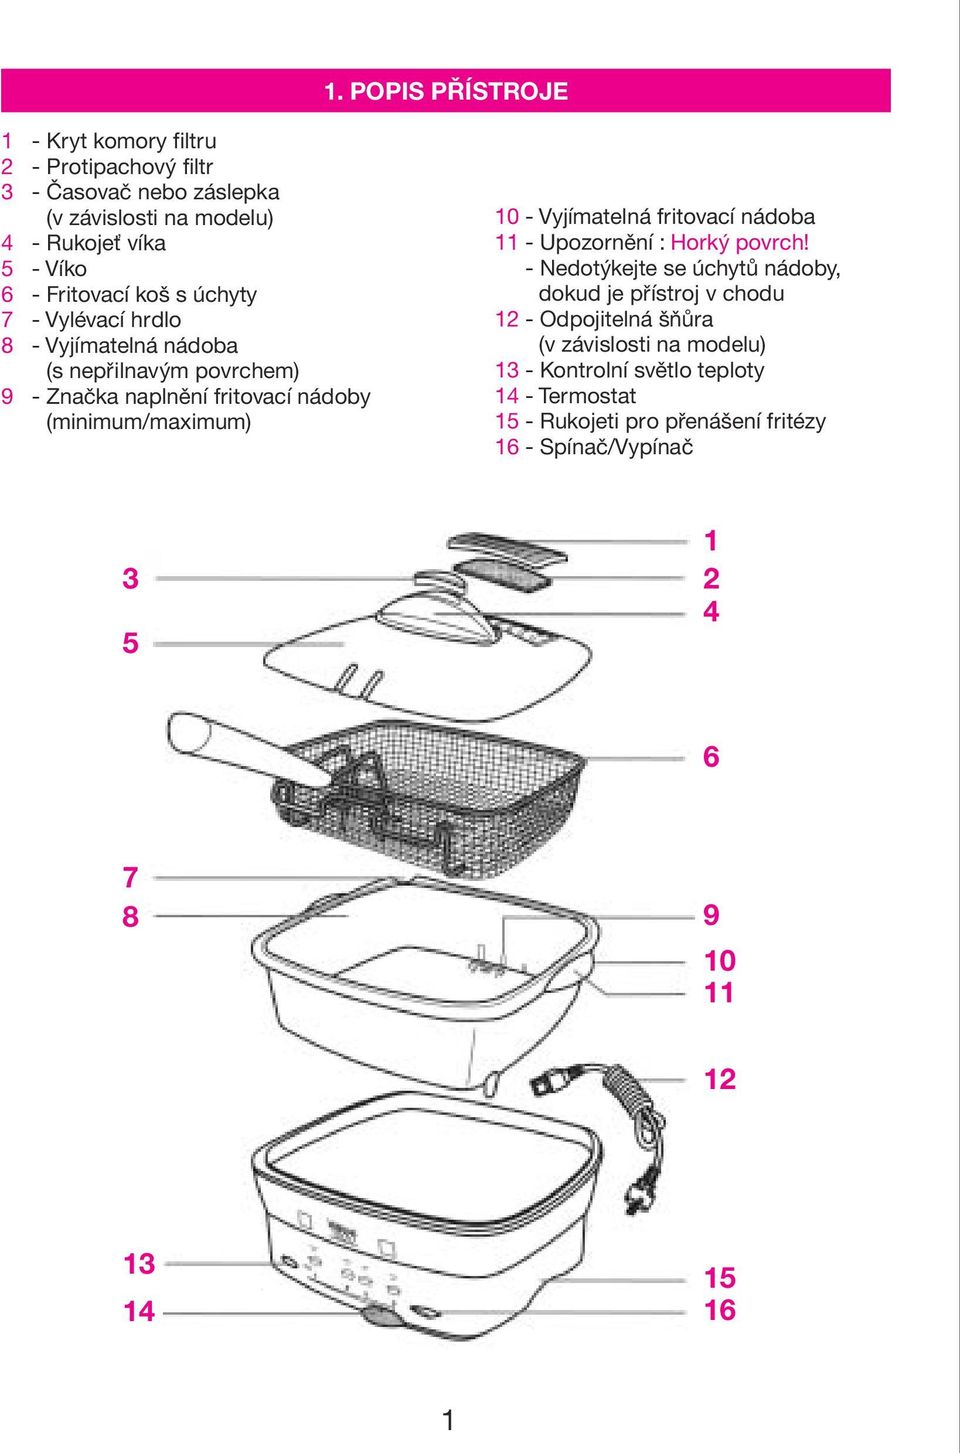 Vyjímatelná fritovací nádoba 11 - Upozornìní : Horký povrch - Nedotýkejte se úchytù nádoby, dokud je pøístroj v chodu 12 - Odpojitelná šòùra (v